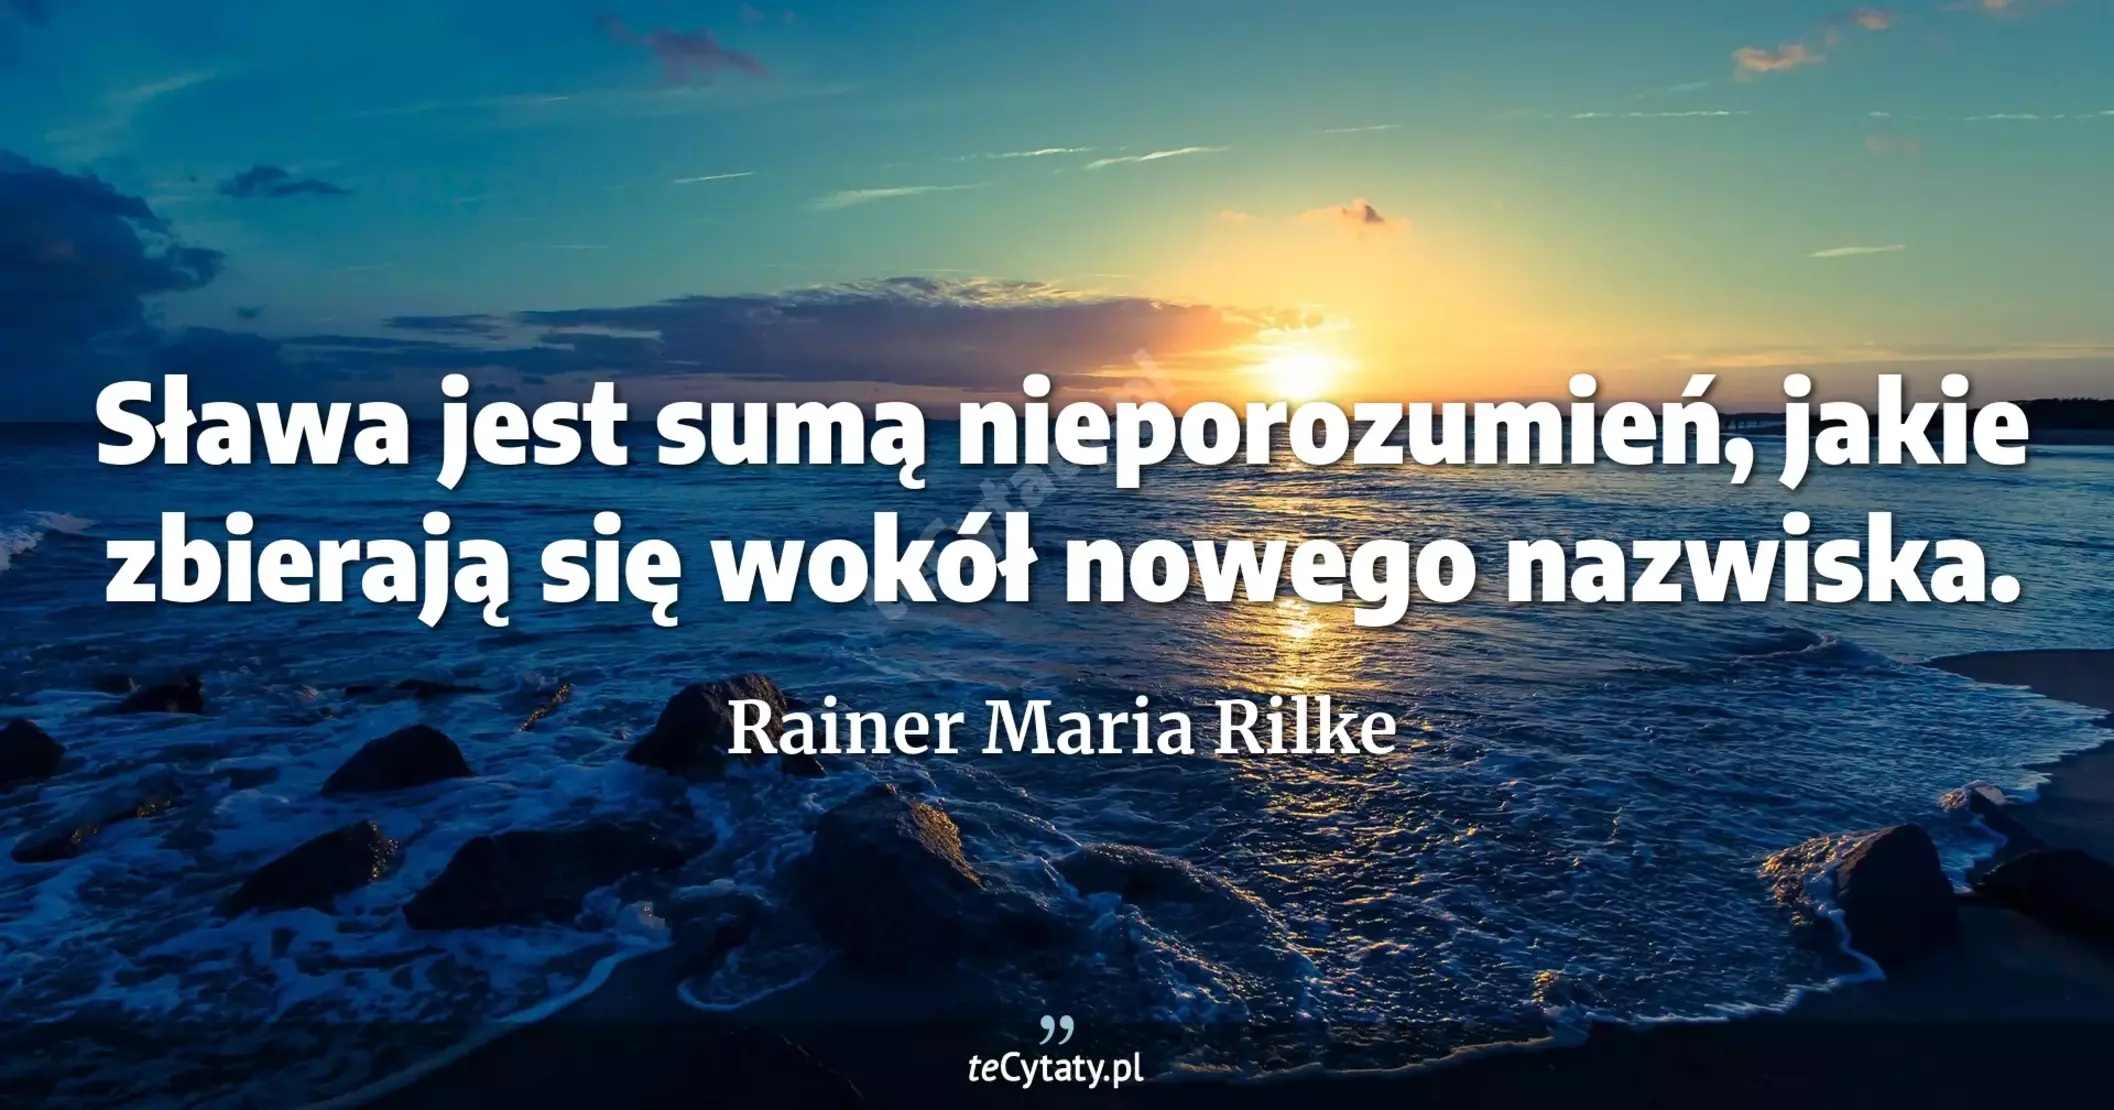 Sława jest sumą nieporozumień, jakie zbierają się wokół nowego nazwiska. - Rainer Maria Rilke